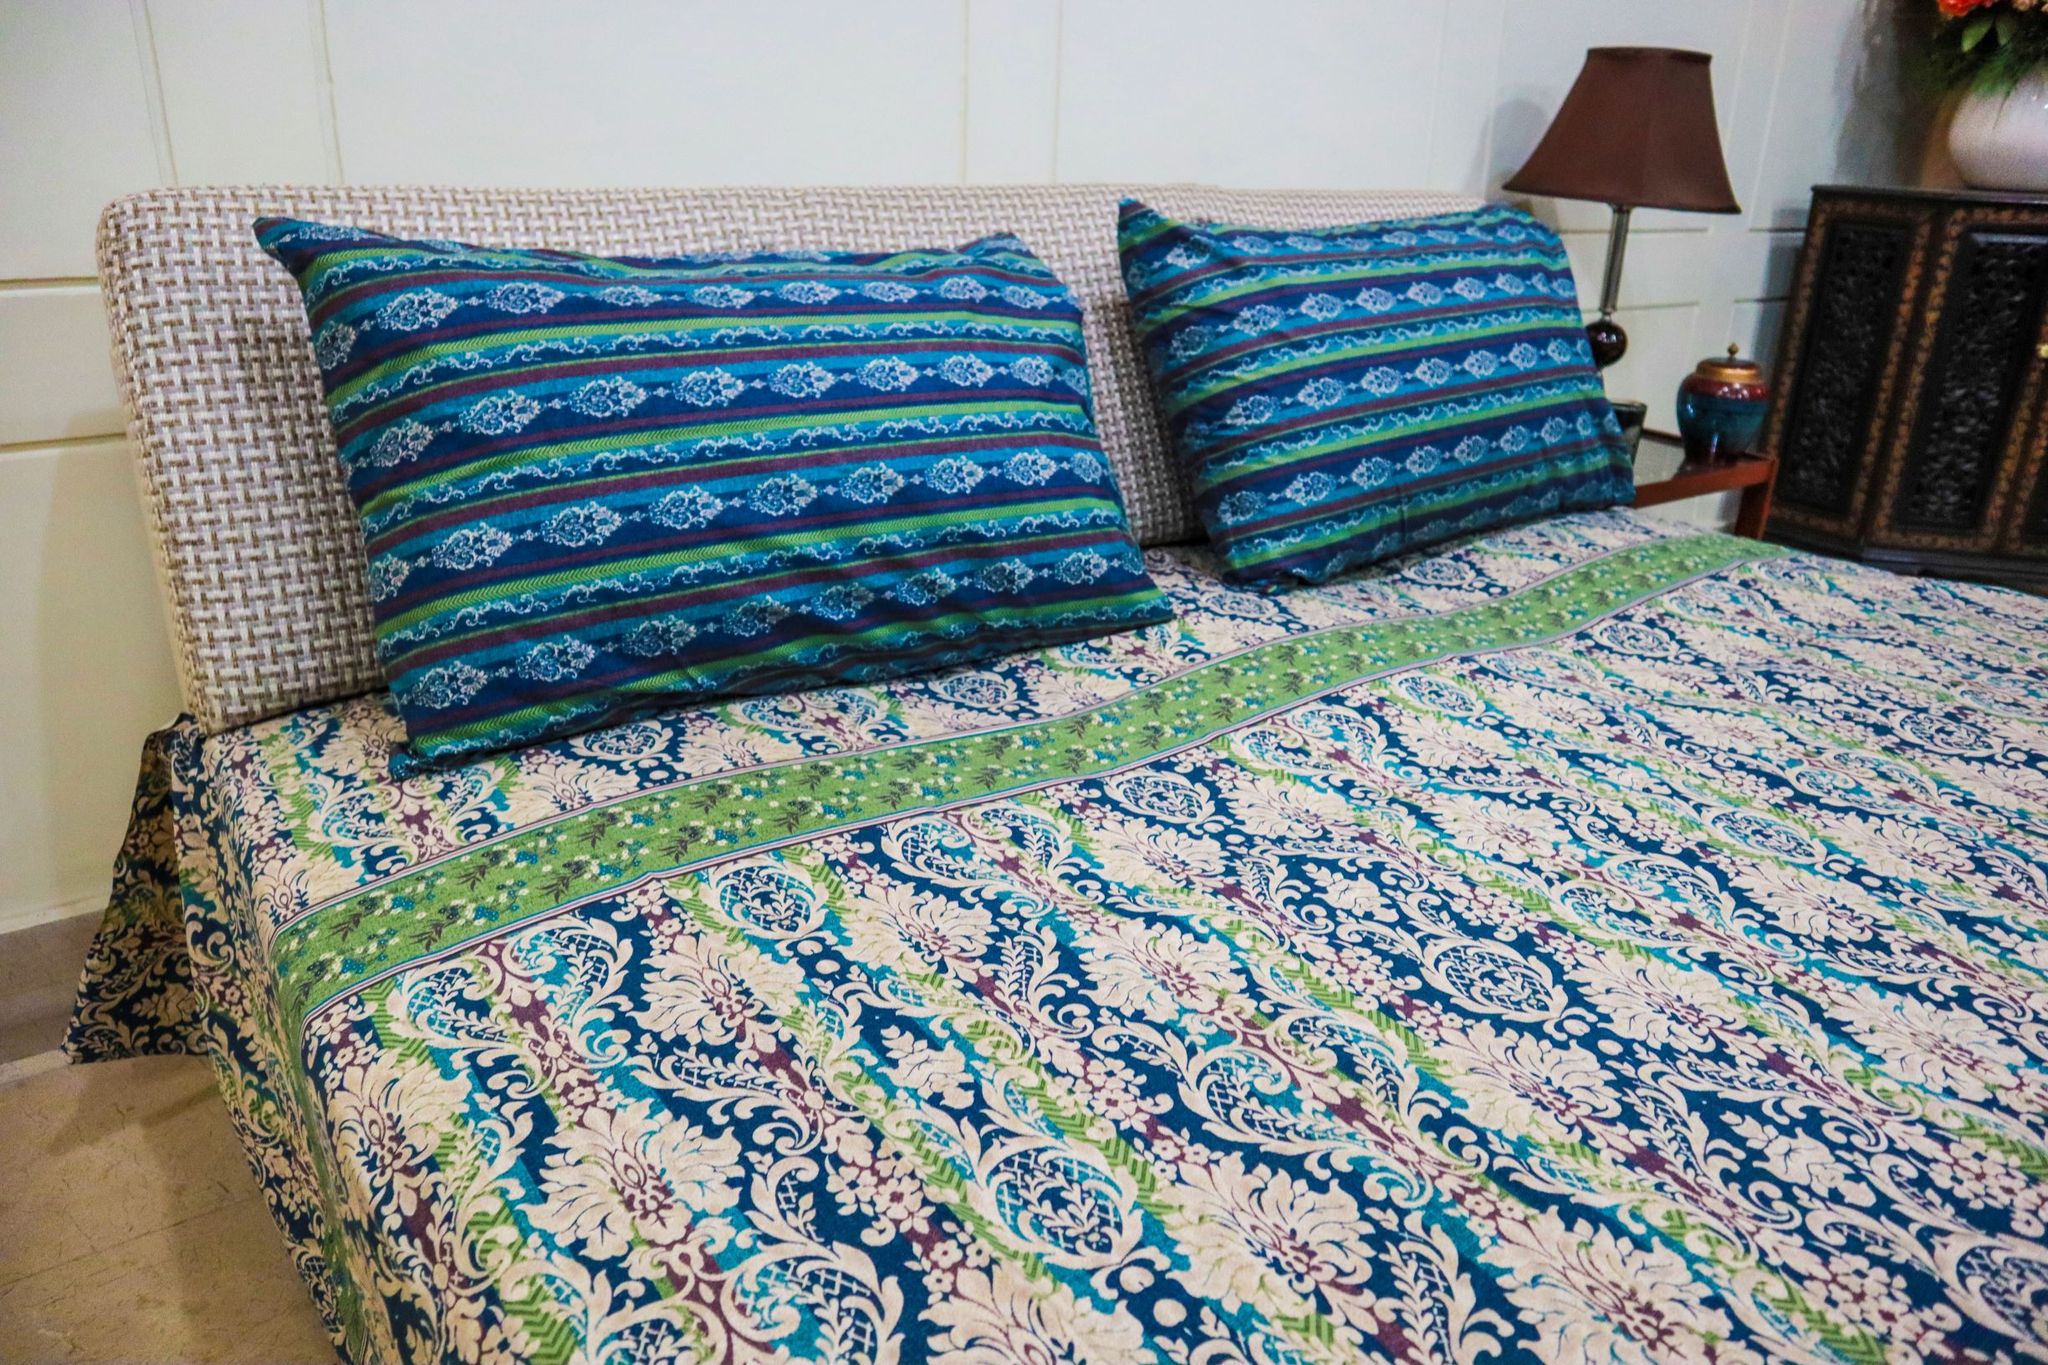 Floral Ocean Bed Sheet Set - King Size 1